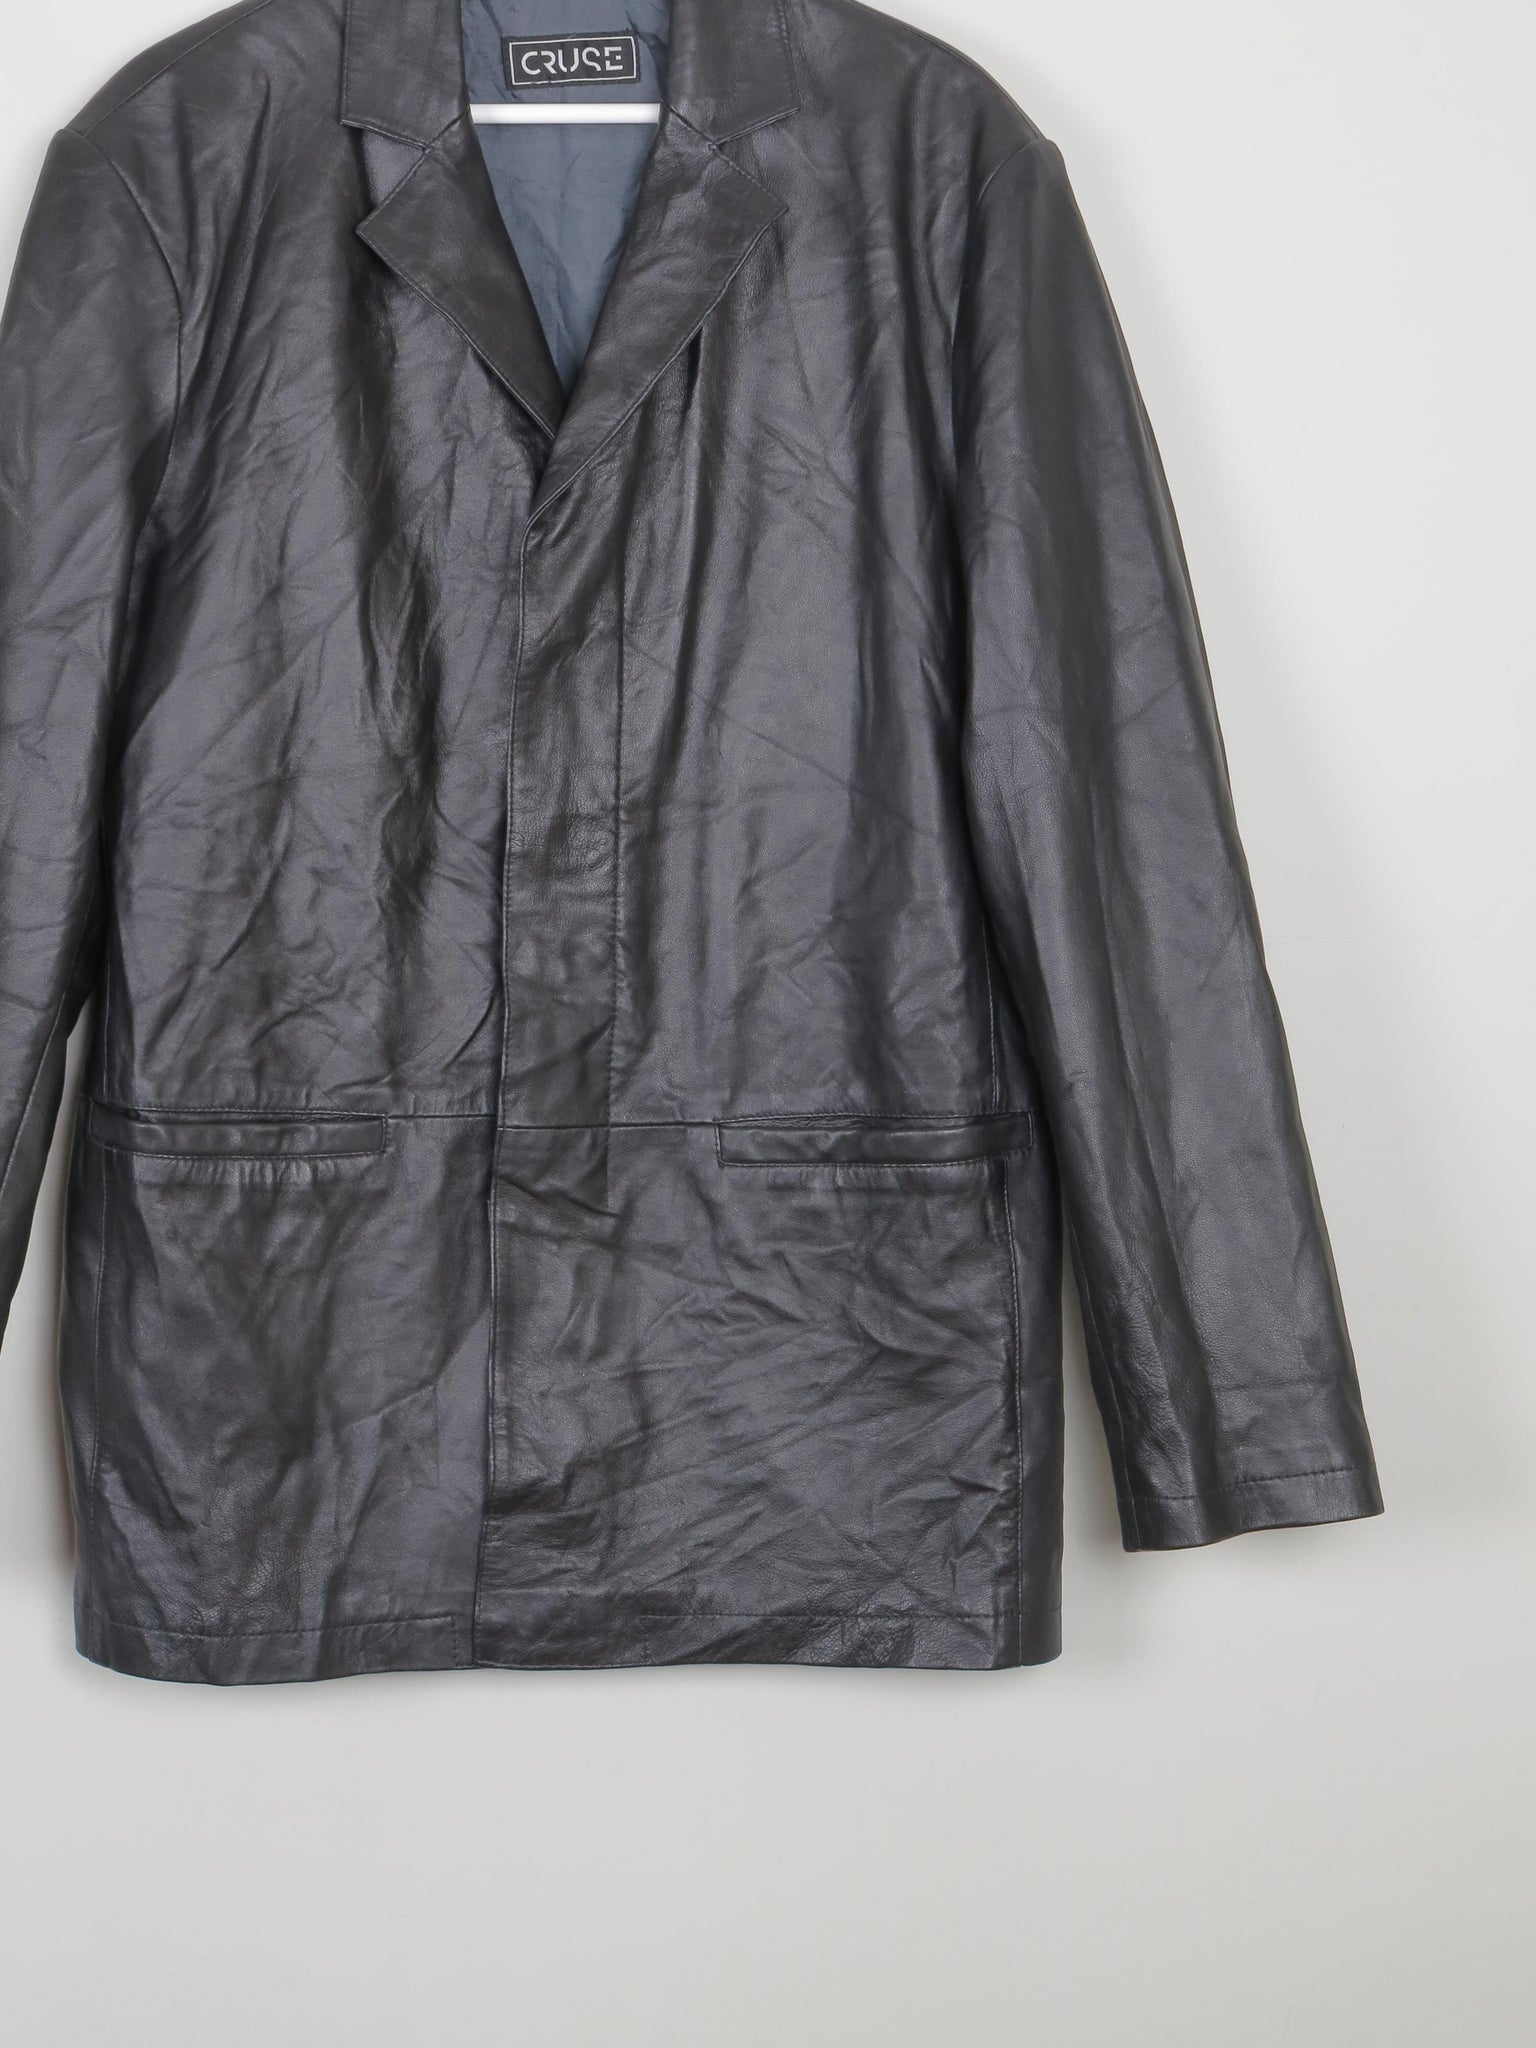 Men's Black Leather Vintage Jacket L - The Harlequin